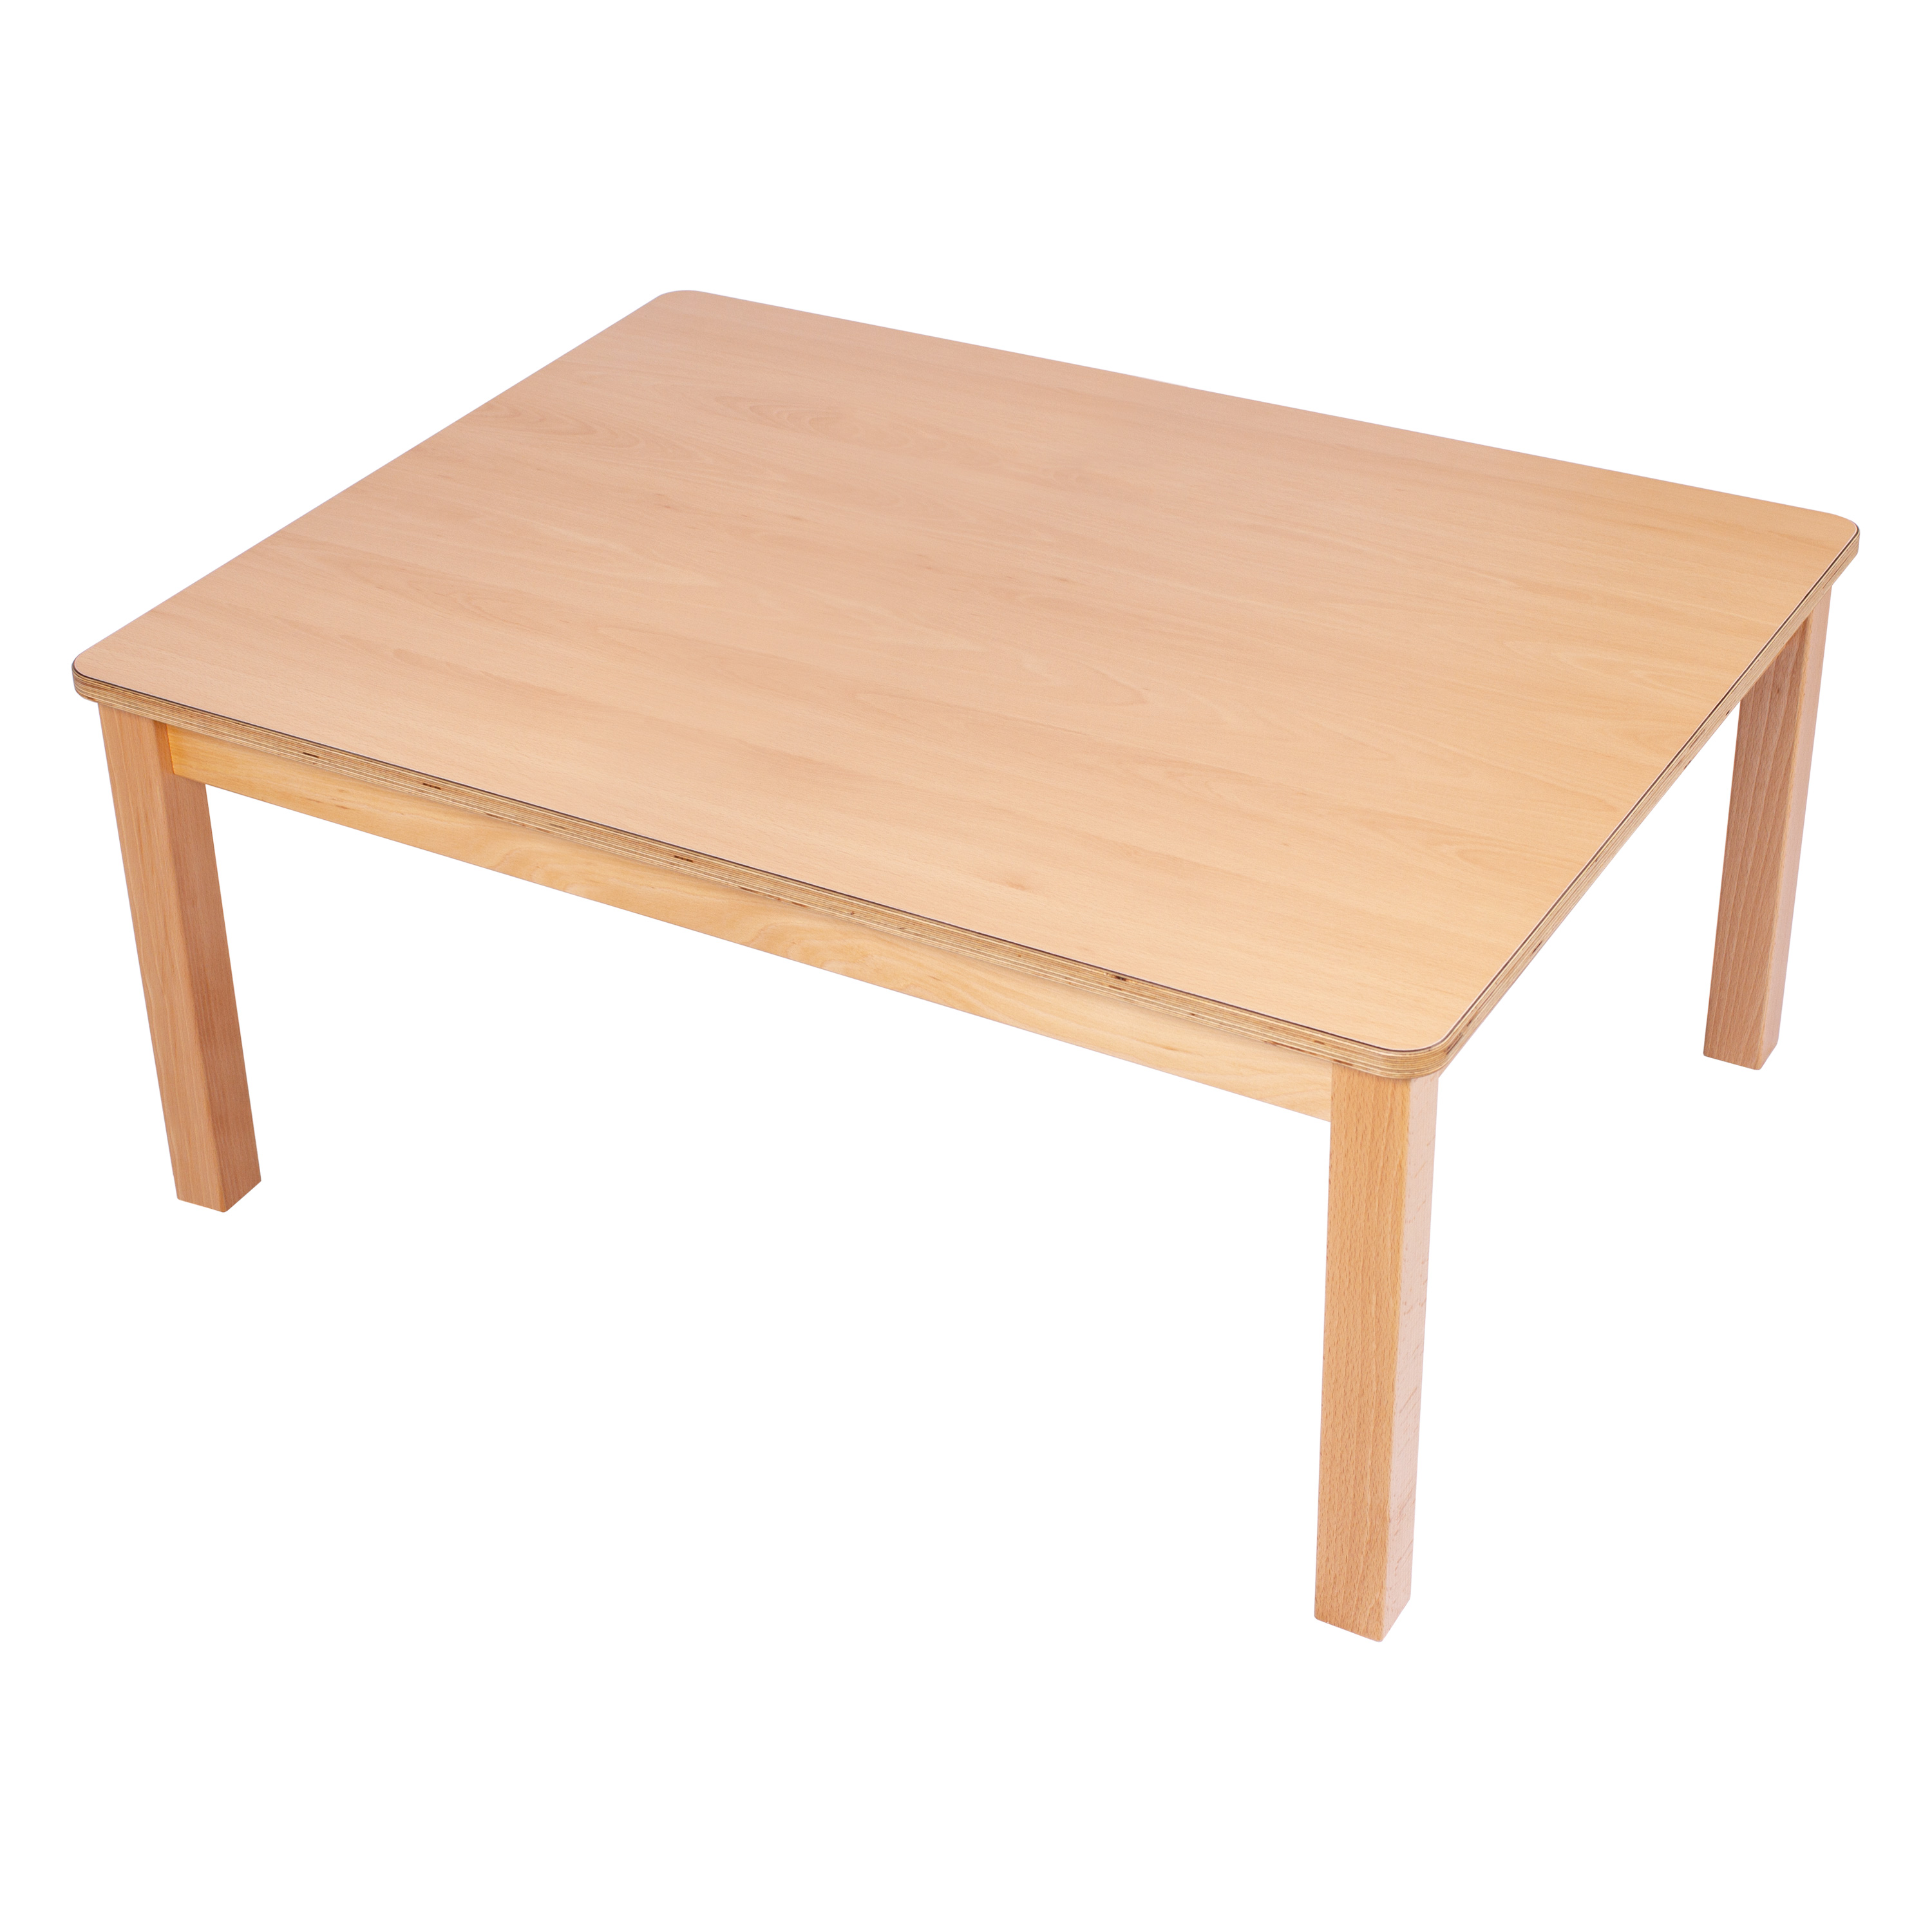 U3-Rechteck-Tisch 120 x 80 cm, Ecken gerundet, H: 46 cm